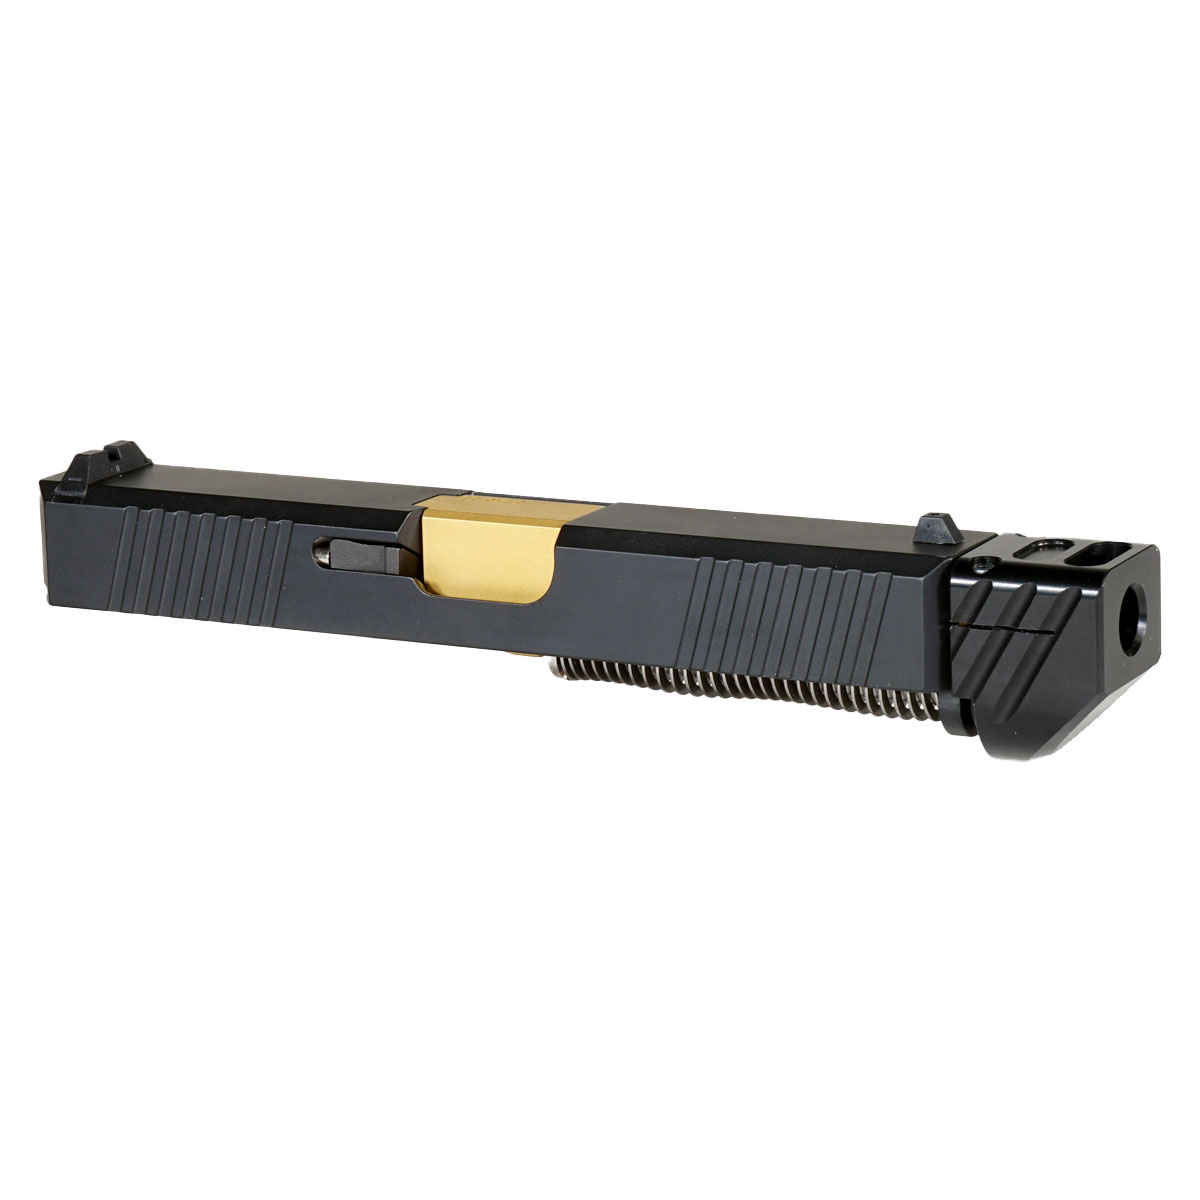 OTD 'Oakley V4 w/ Black Compensator' 9mm Complete Slide Kit - Glock 19 Gen 1-3 Compatible